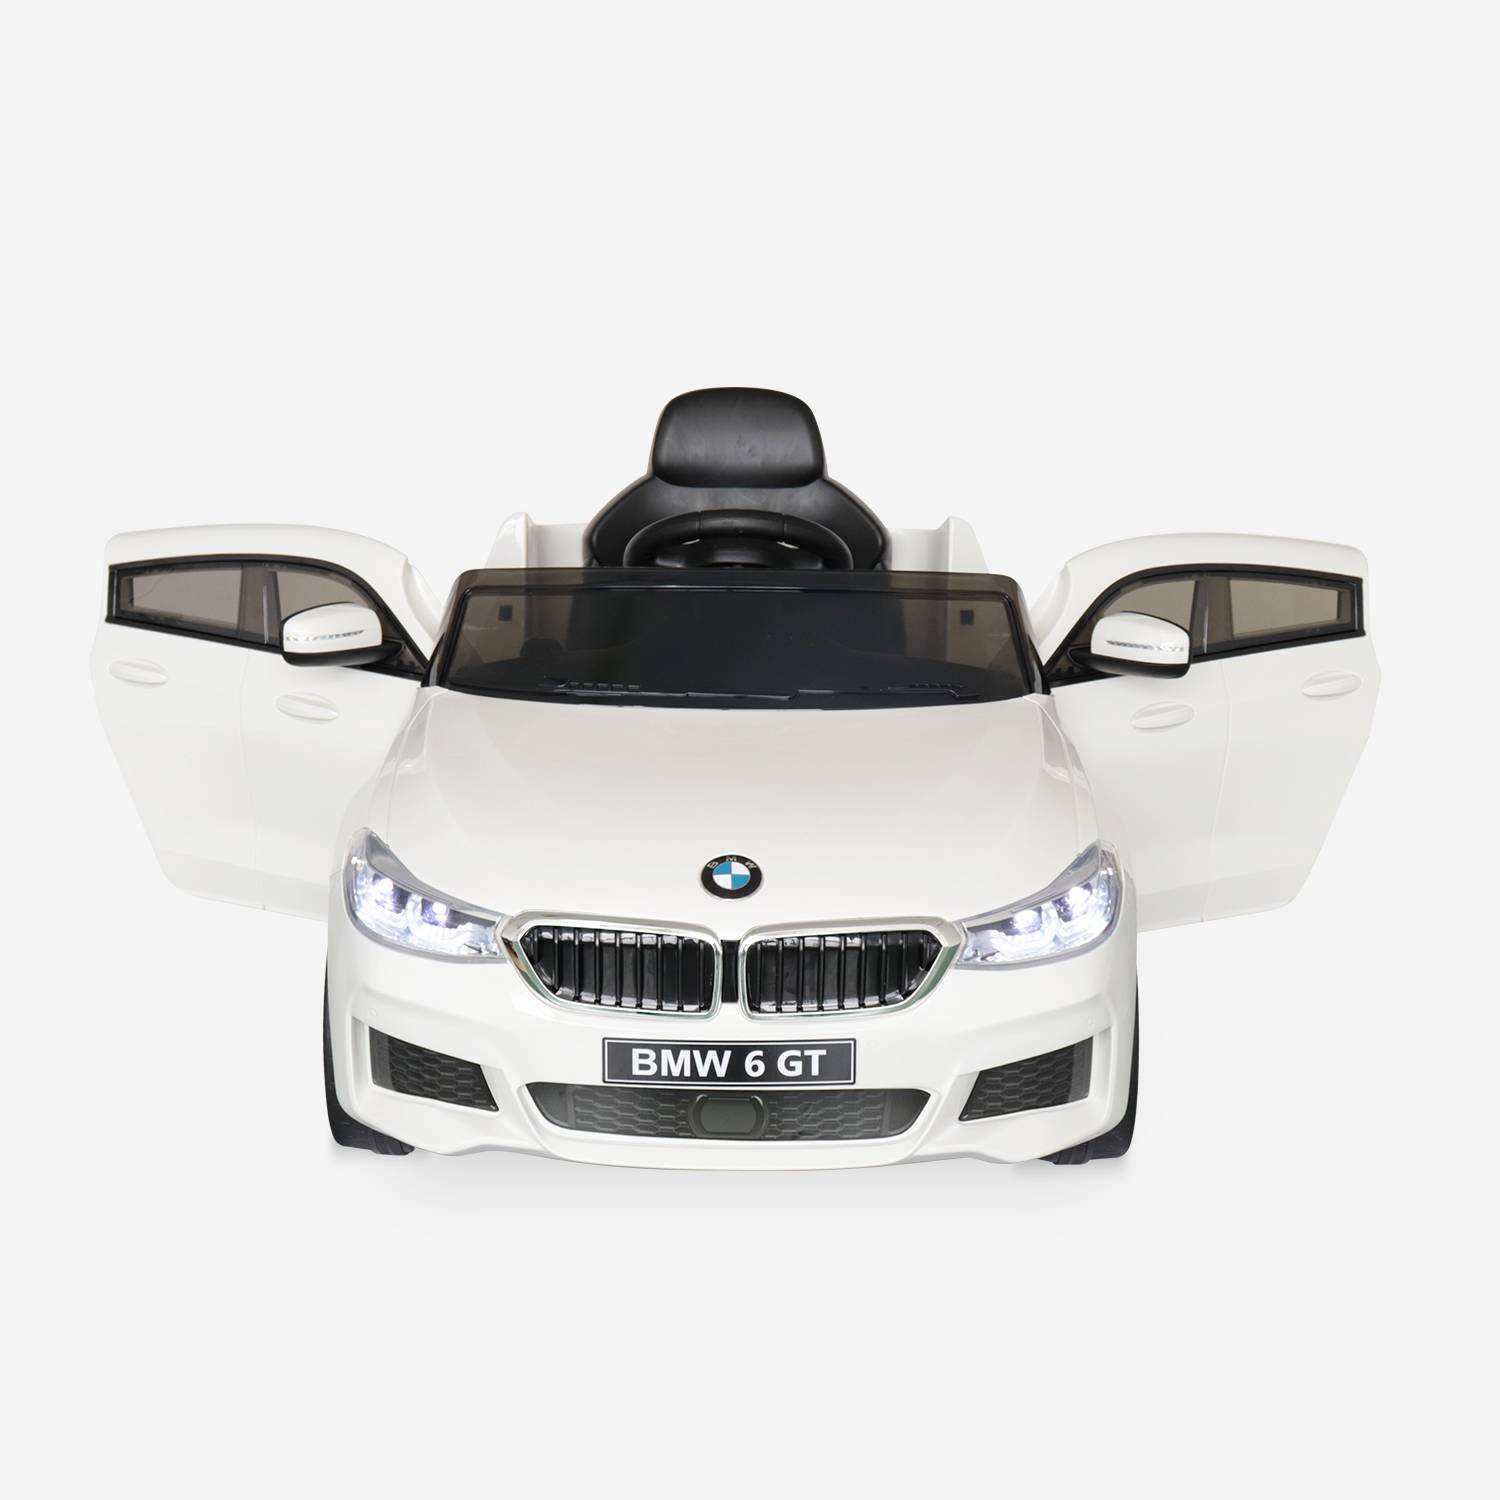 BMW Série 6 GT Gran Turismo branco, carro elétrico para crianças 12V 4 Ah, 1 lugar, com rádio e controlo remoto Photo6